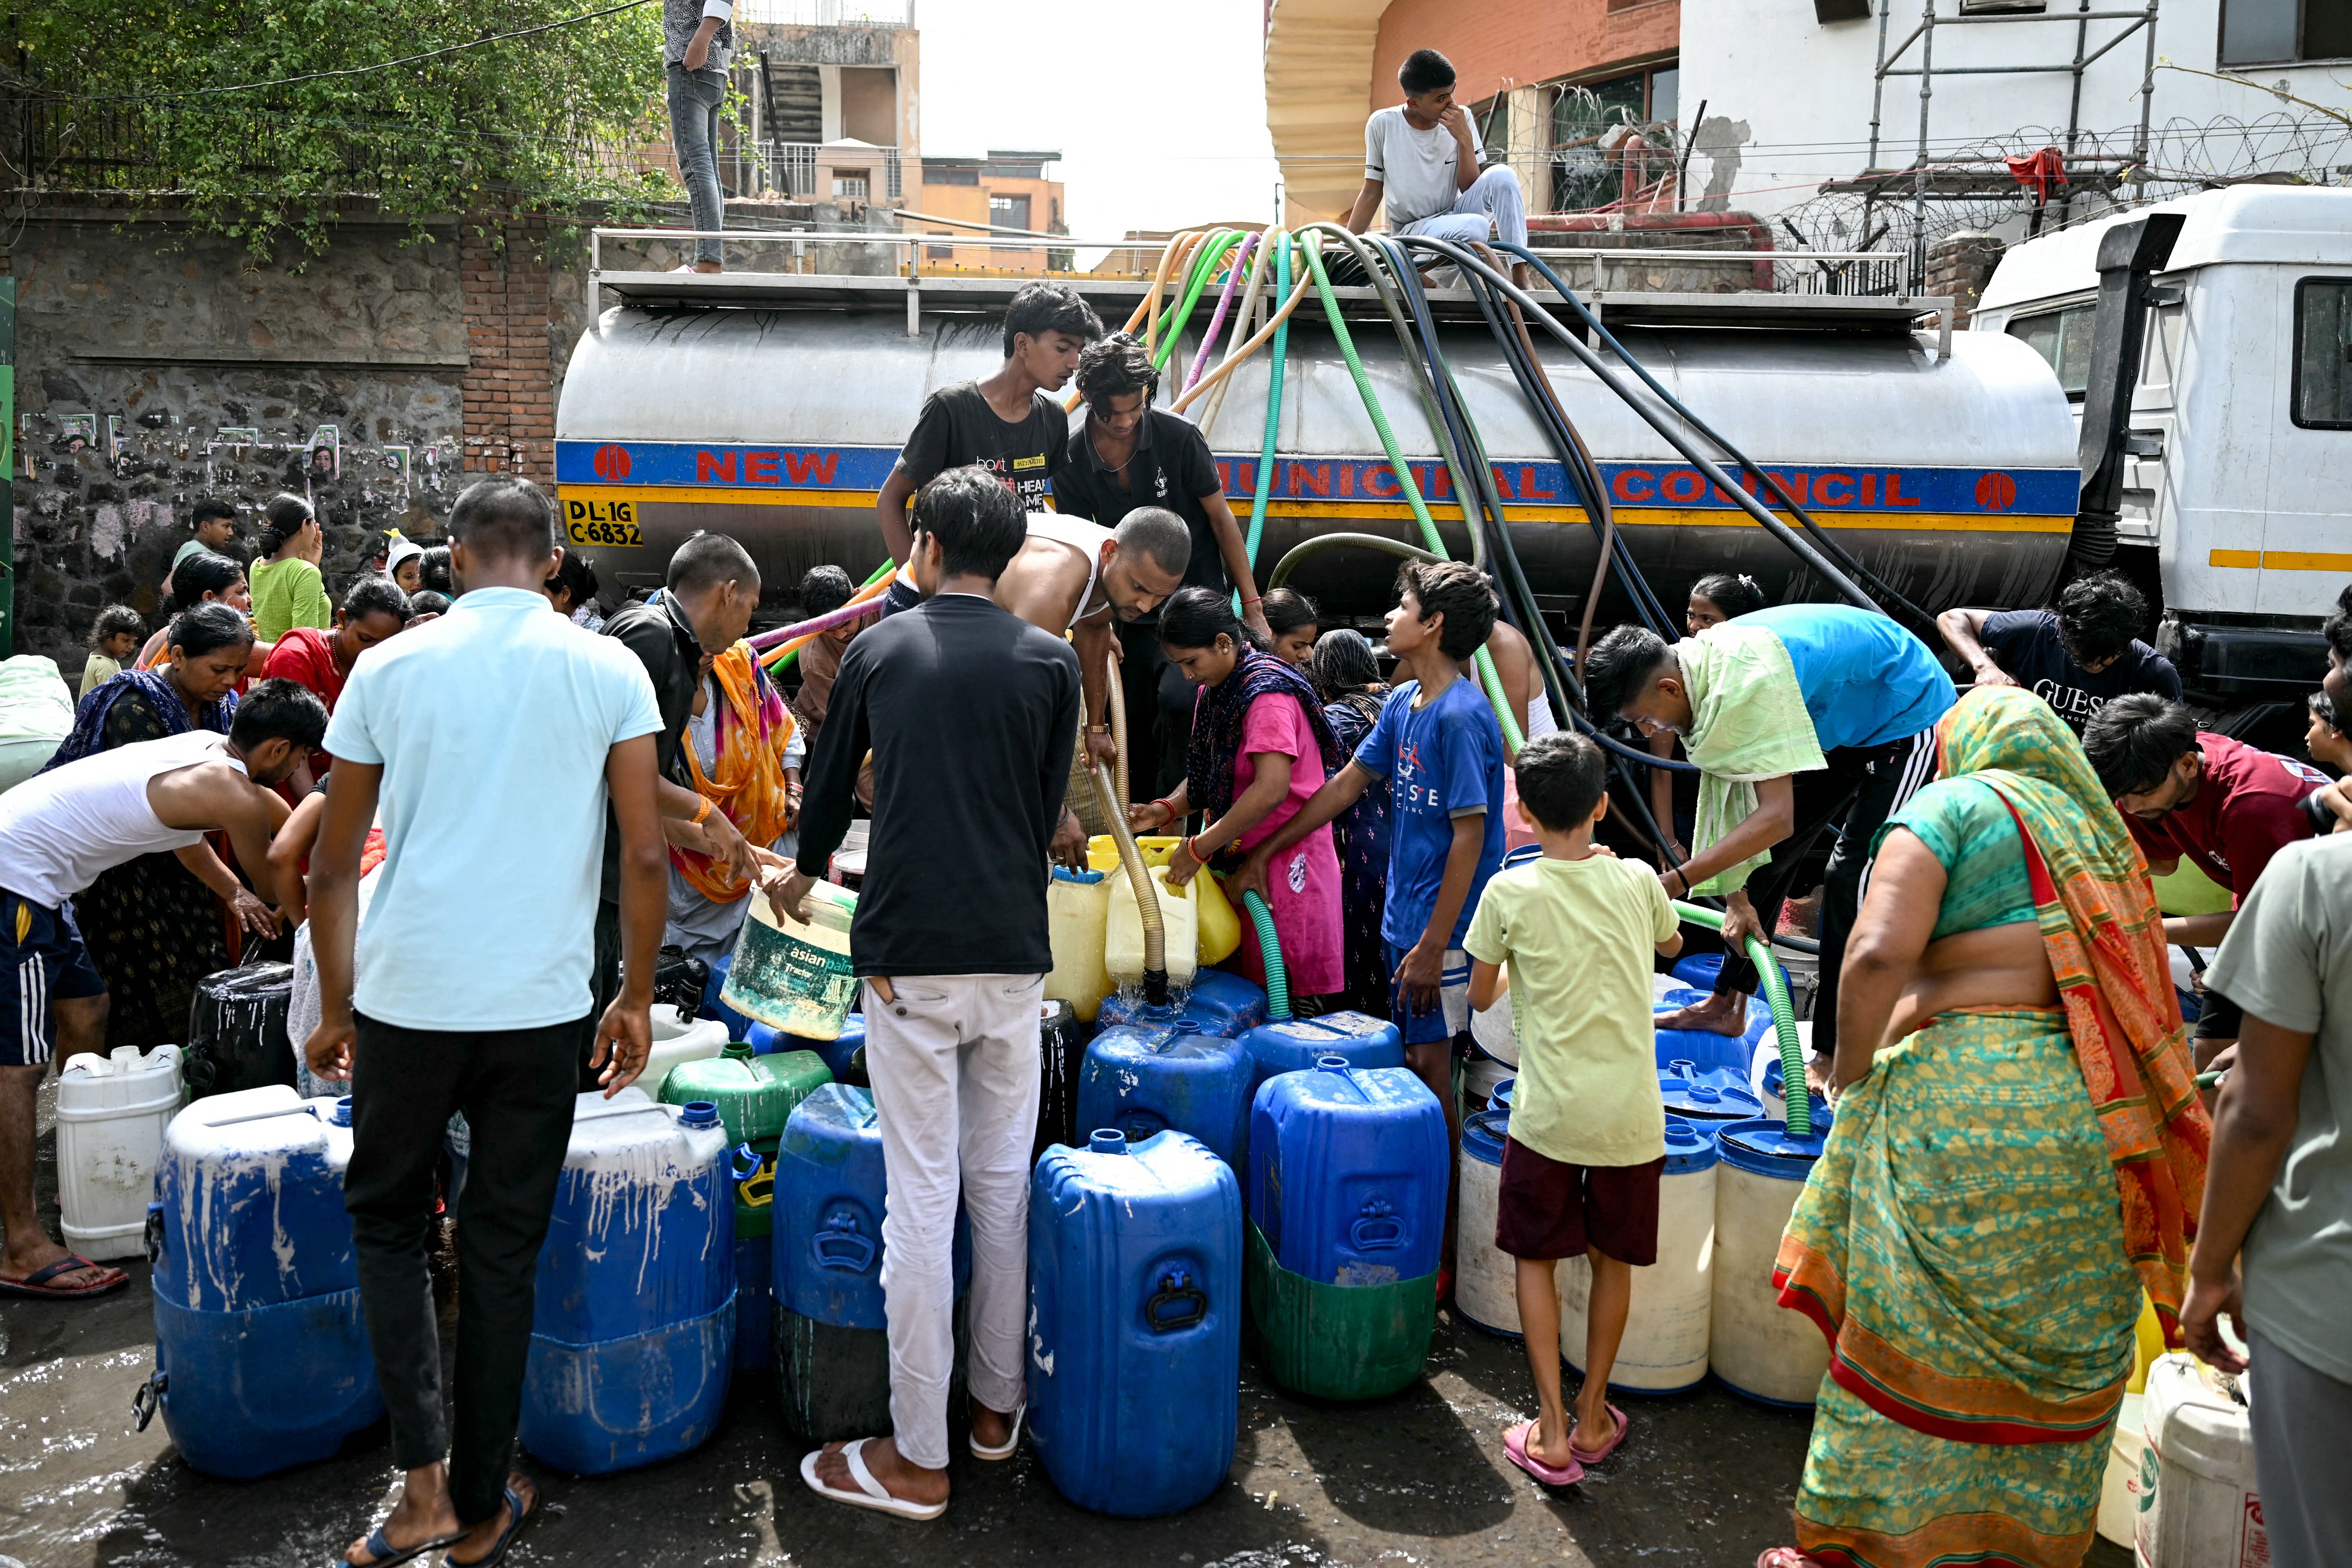 Los residentes llenan sus contenedores con agua suministrada por un camión cisterna municipal en Delhi, India.